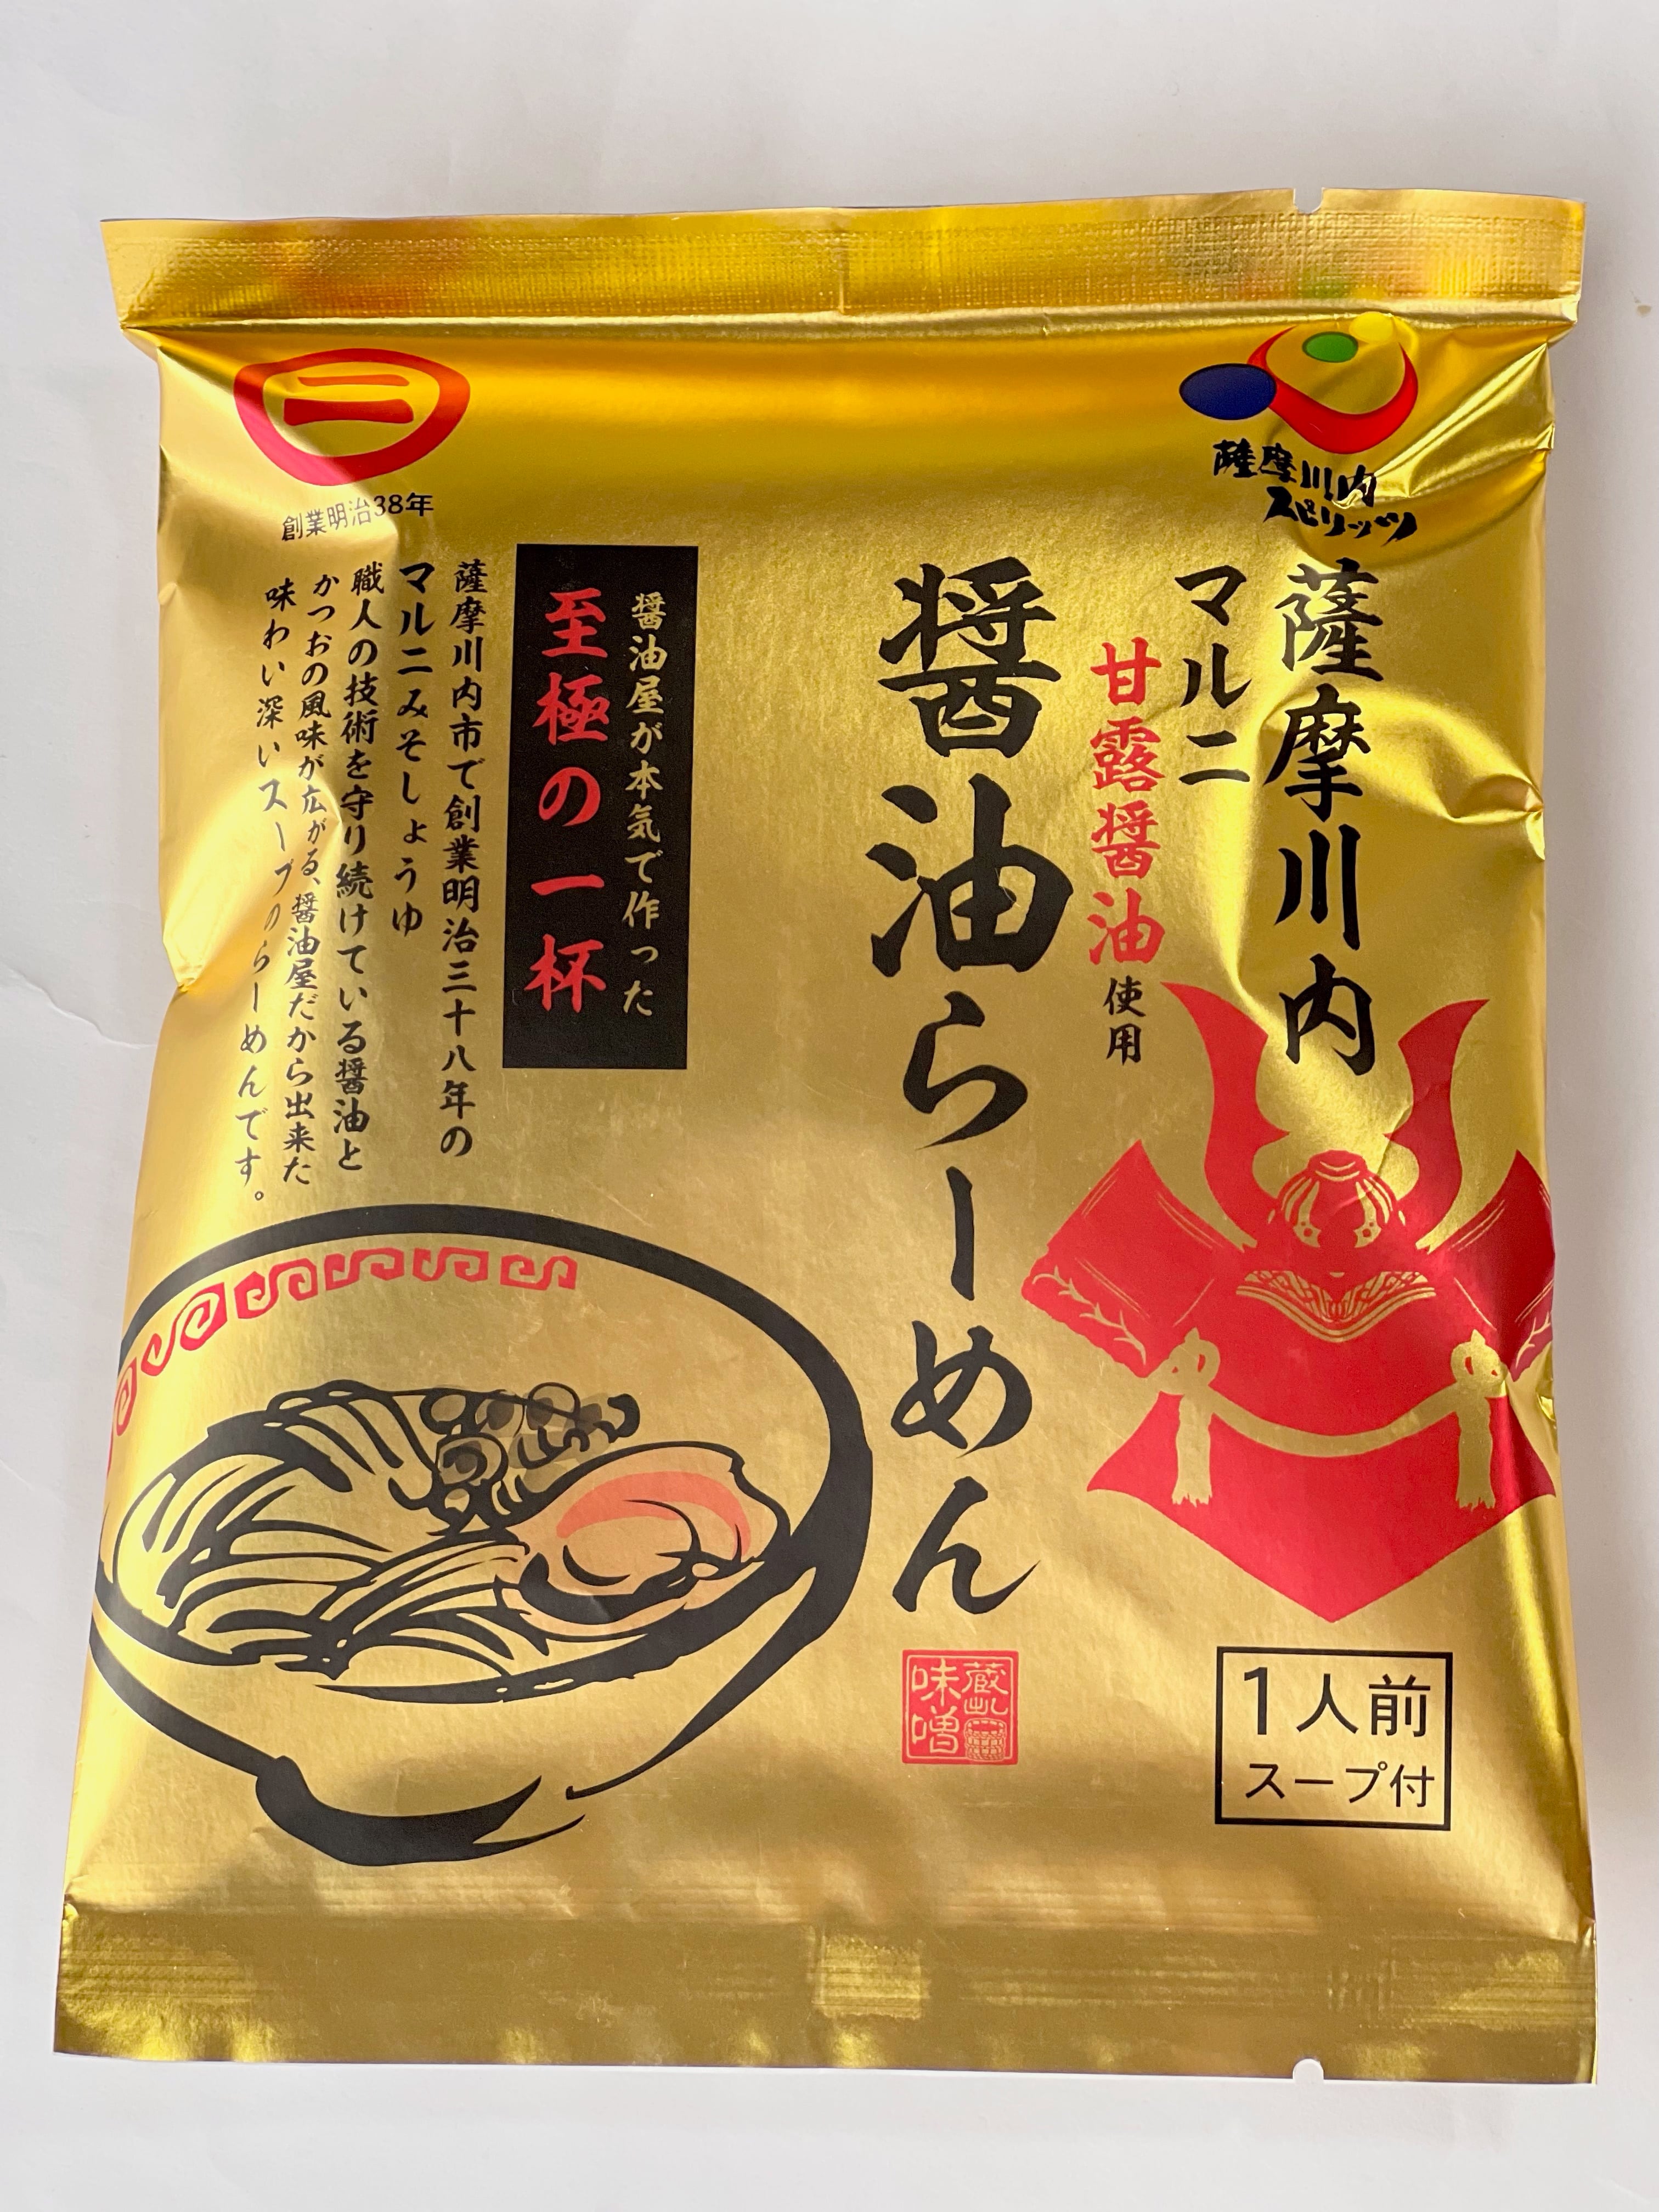 薩摩川内味噌醤油　マルニ醤油らーめん(1食入り)　株式会社